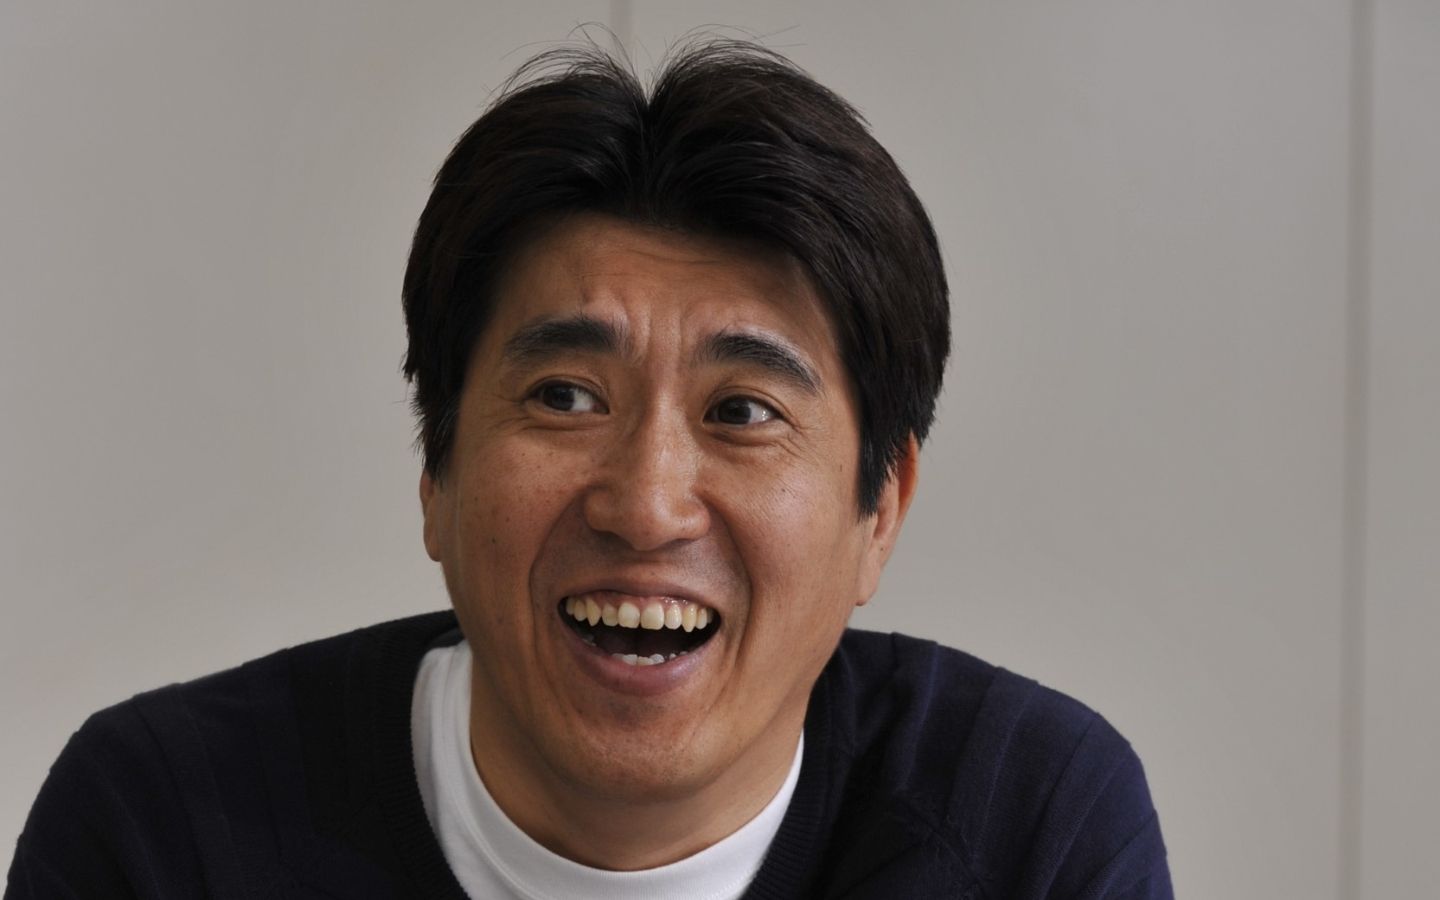 石橋貴明58歳に 野猿 復活 45歳引退を公言していた男がテレビに しがみつく 理由 文春オンライン